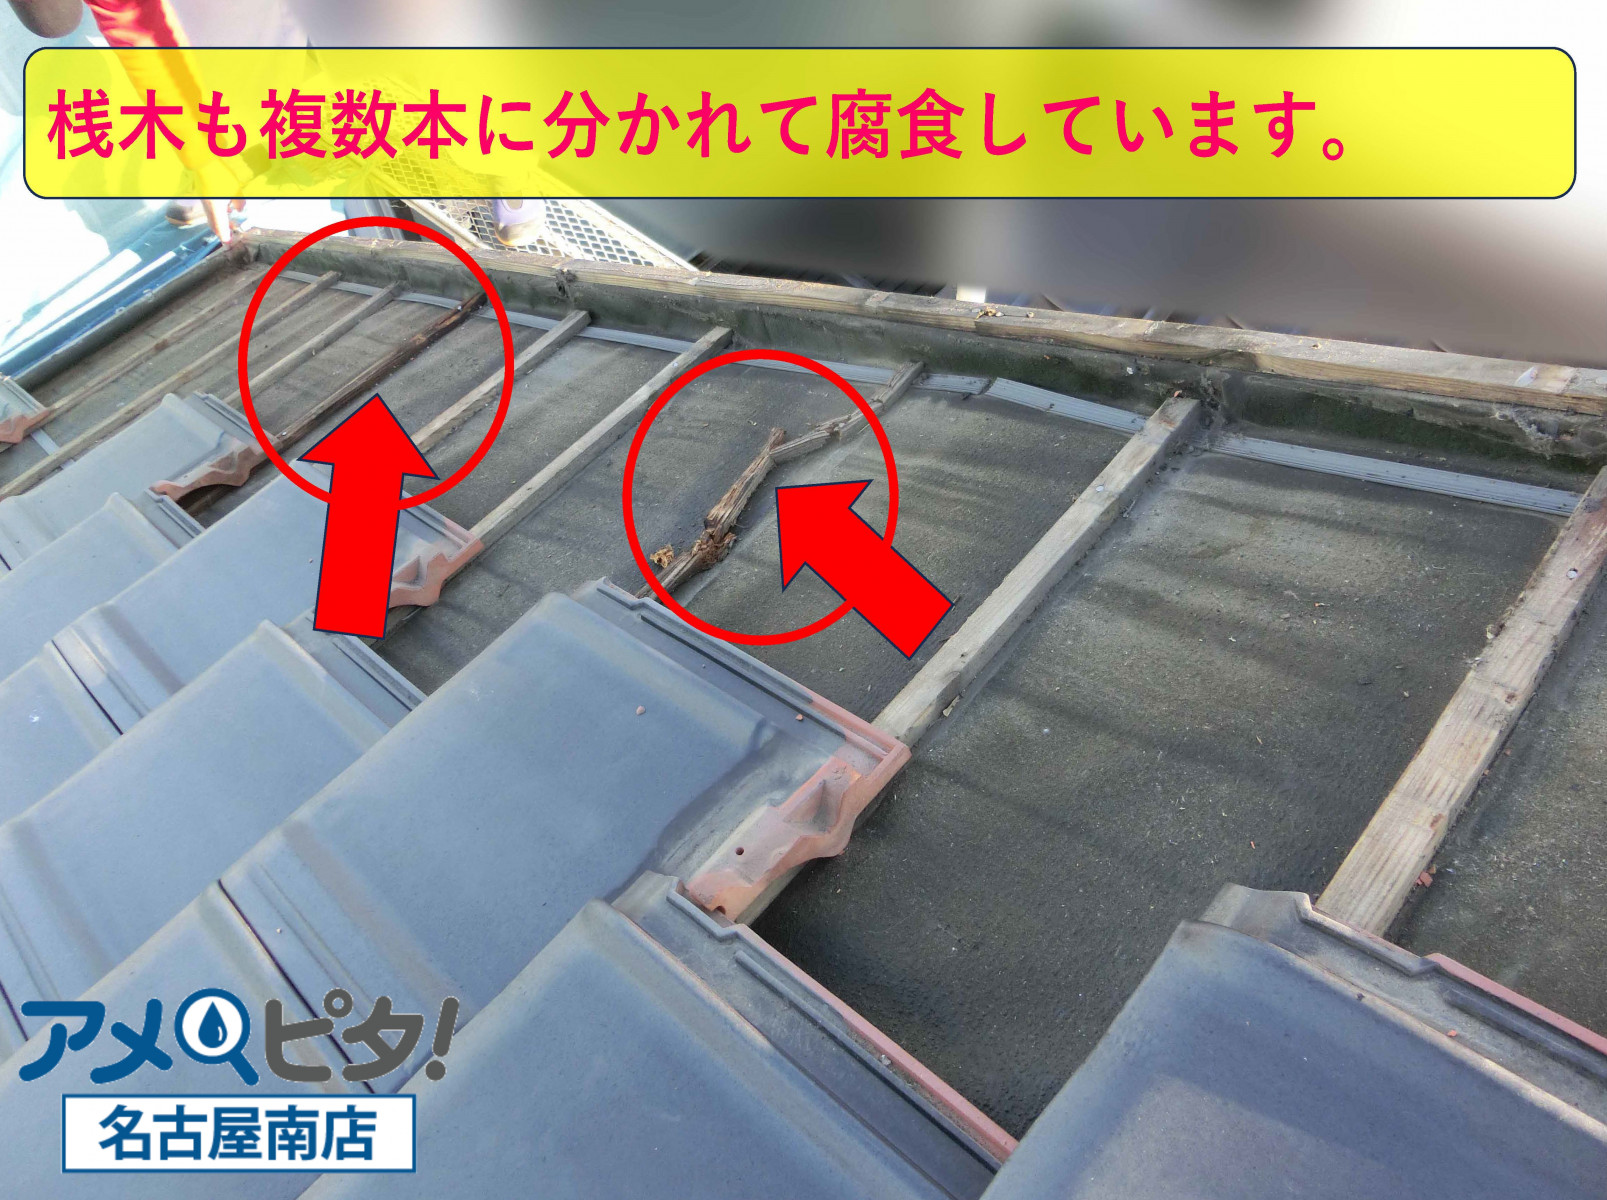 名古屋市緑区にて雨漏りの原因を作った二階建ての屋根の端側を修復作業を行います